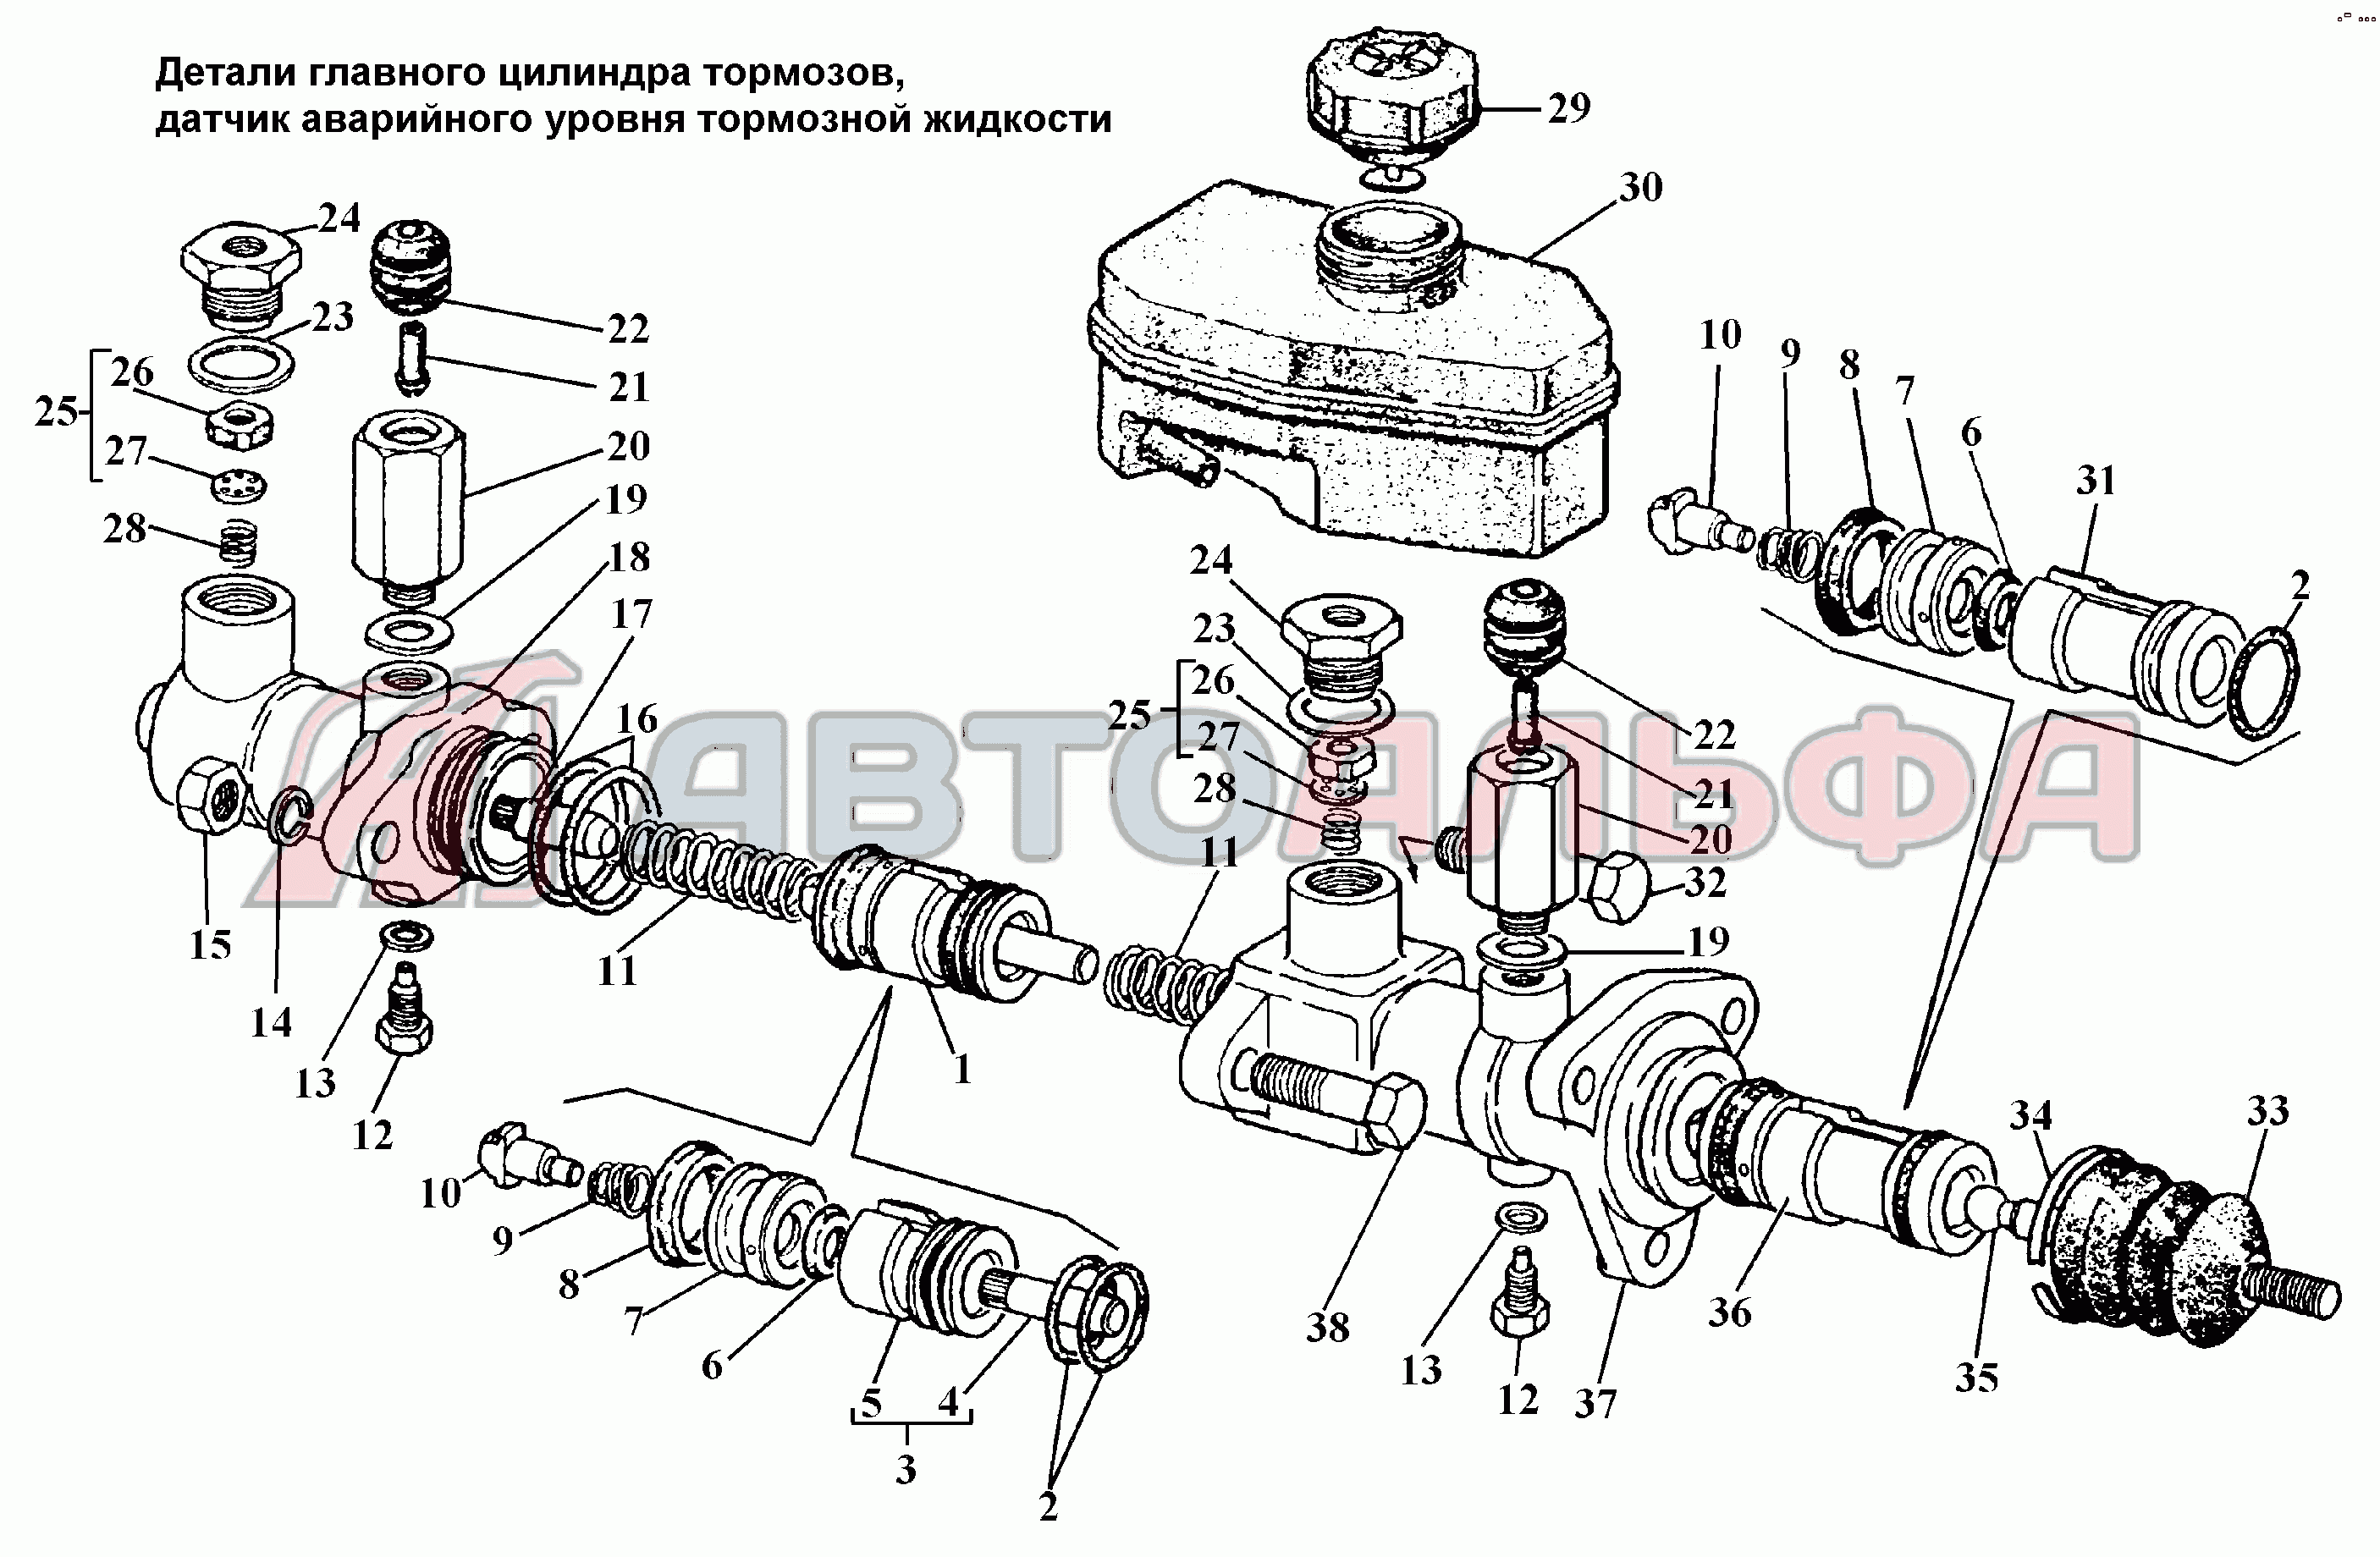 Детали главного цилиндра тормозов, датчик аварийного уровня тормозной жидкости ГАЗ 3308, каталог 2002 г.